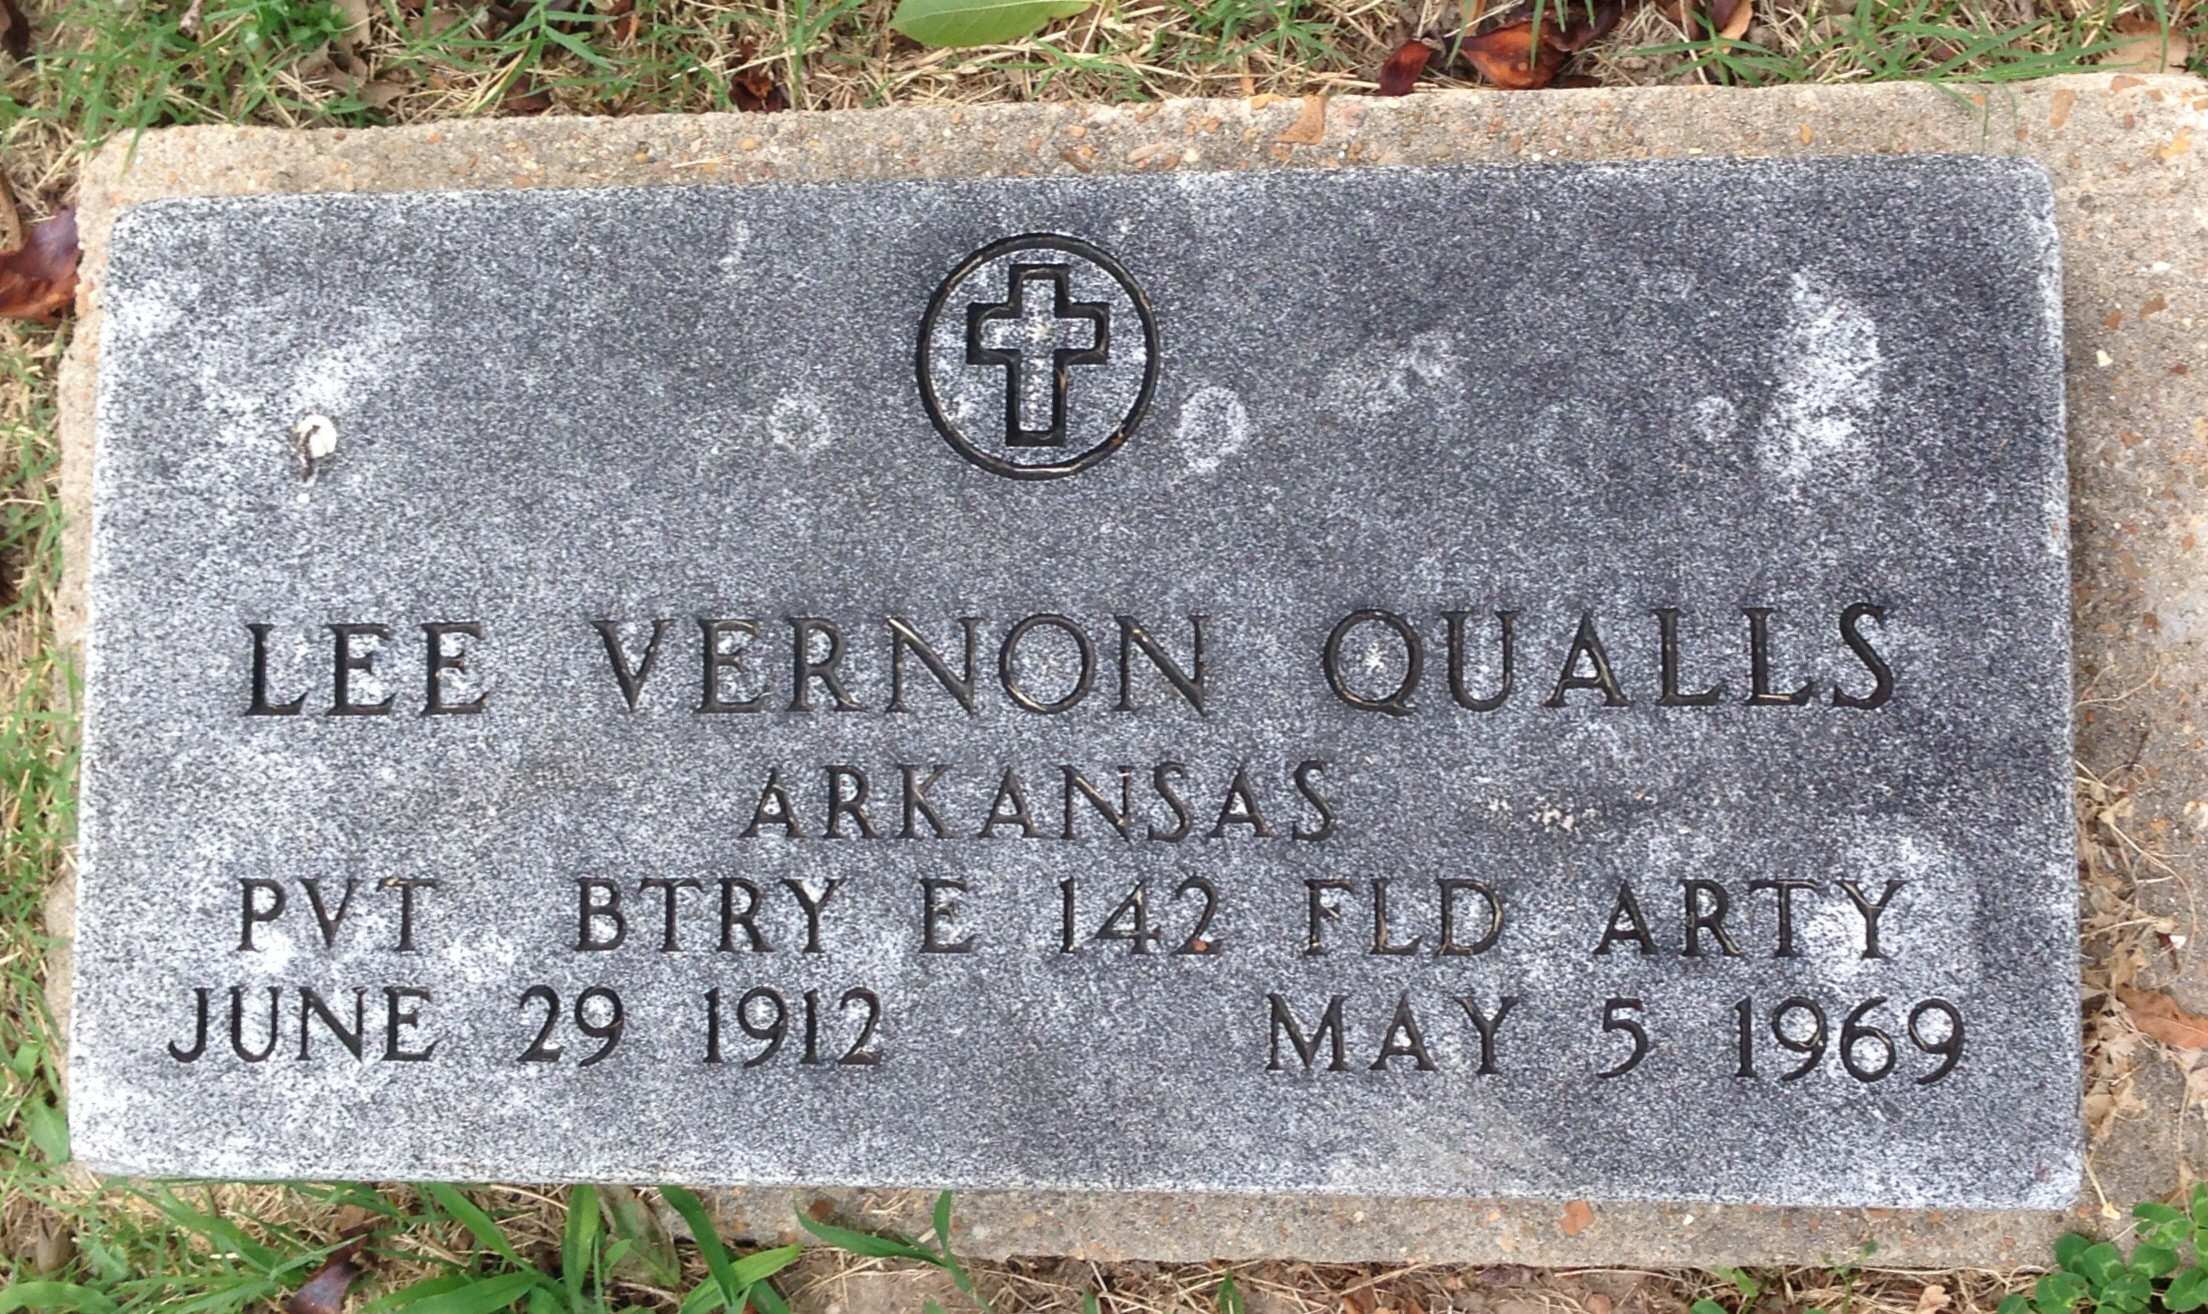 Lee Vernon Qualls